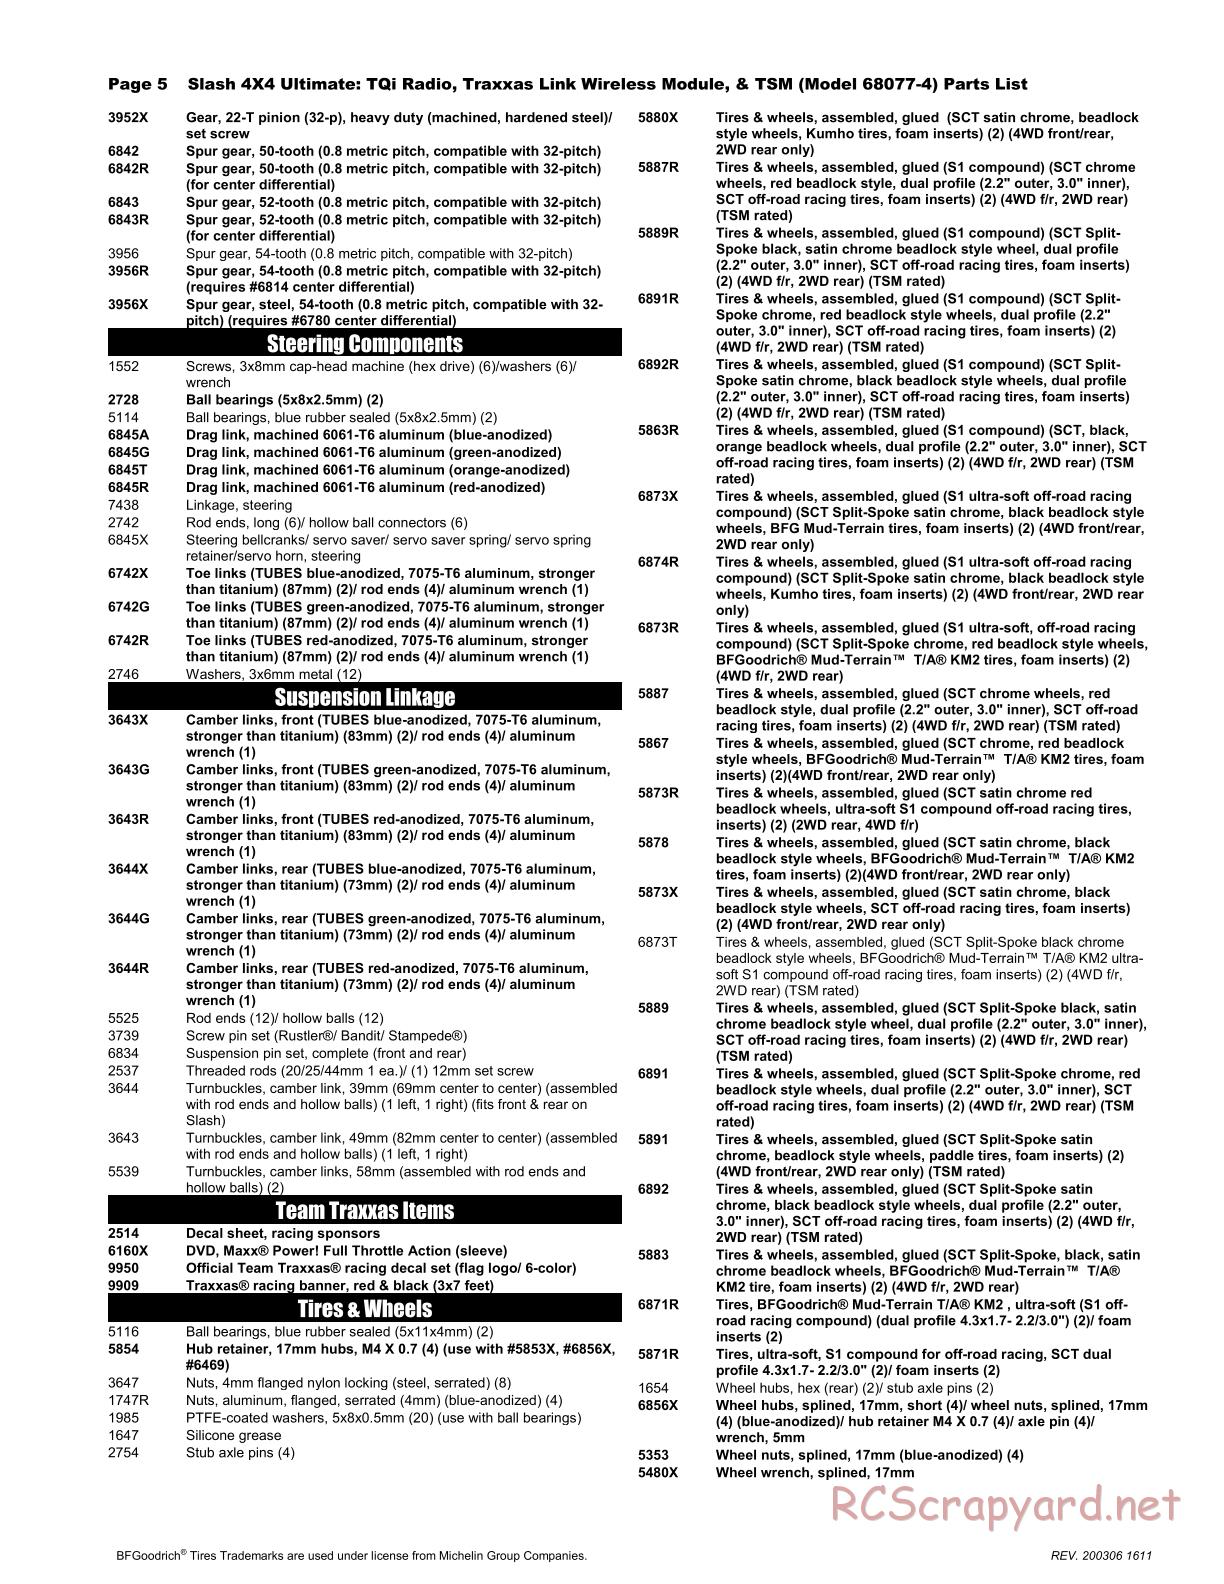 Traxxas - Slash 4x4 Ultimate TSM - Parts List - Page 5